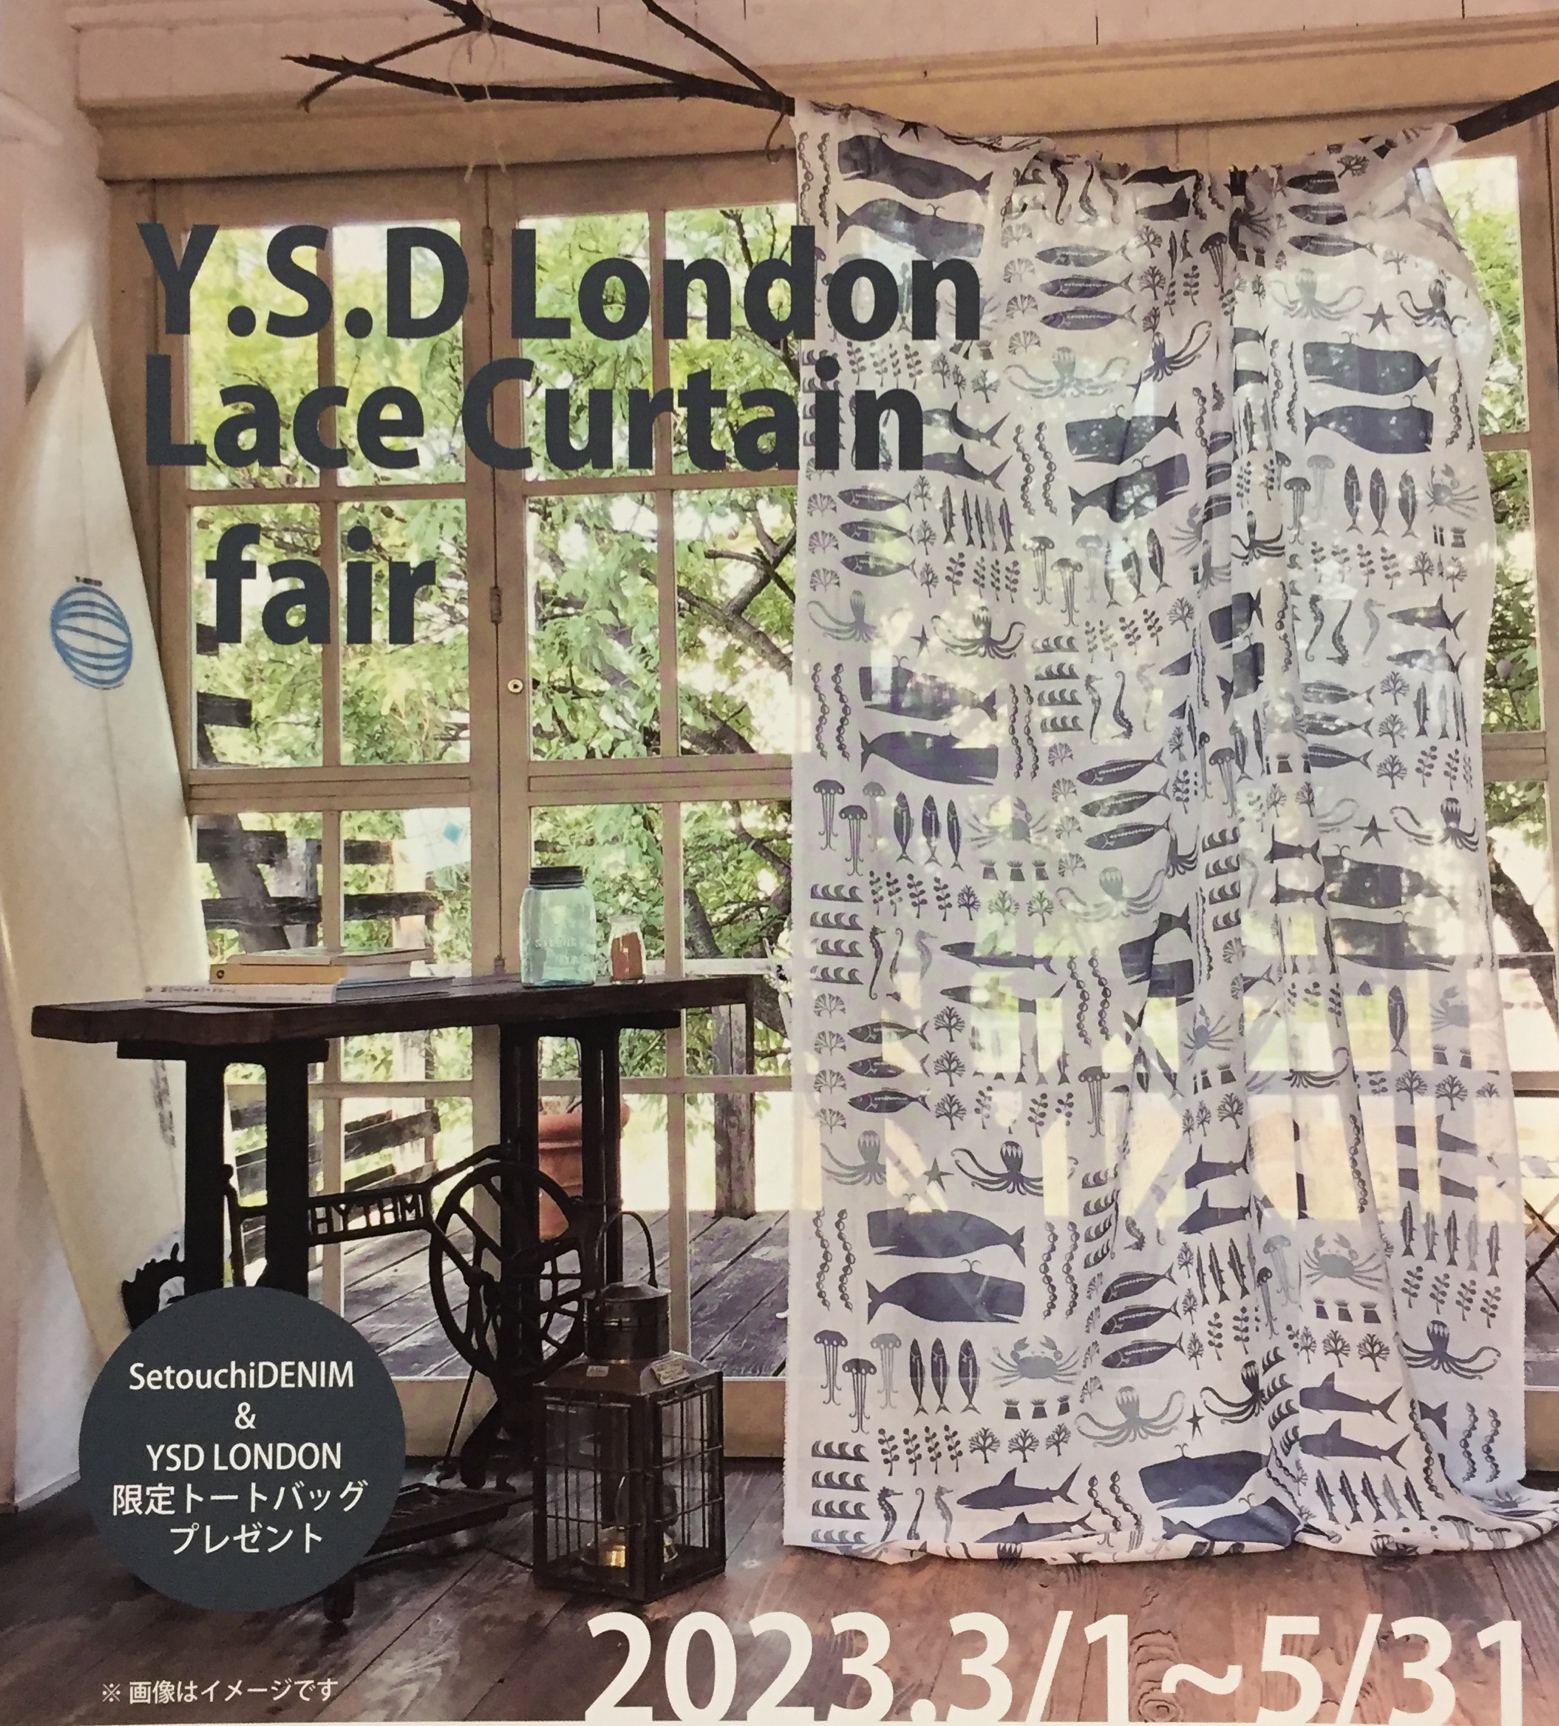 Y.S.D London Lace Curtain fair①.jpeg